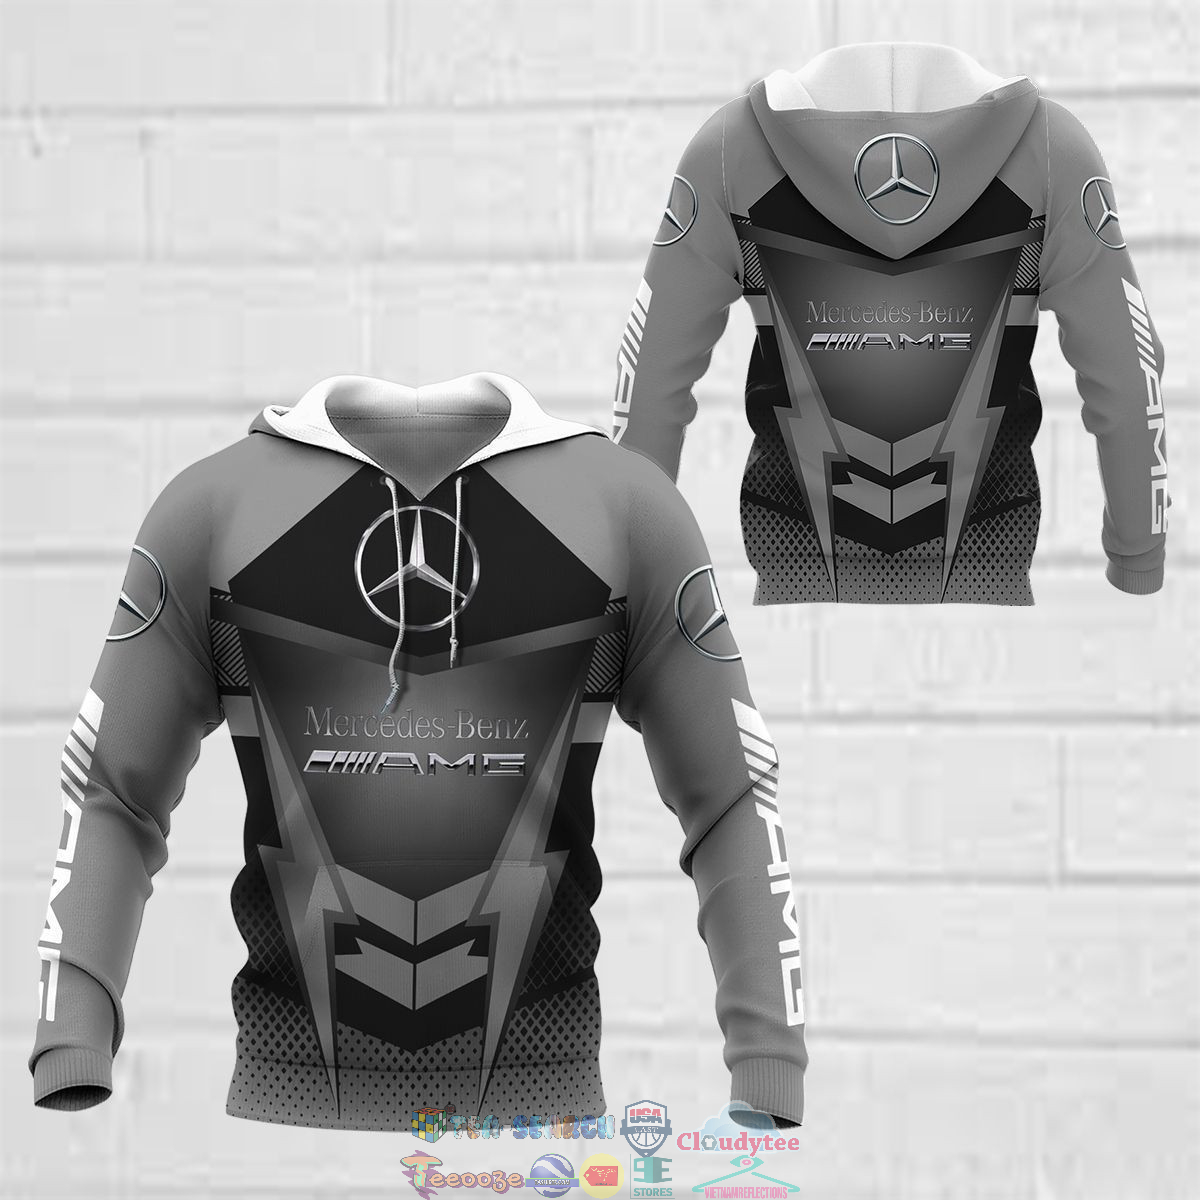 500hDfpu-TH150822-20xxxMercedes-AMG-ver-3-3D-hoodie-and-t-shirt3.jpg